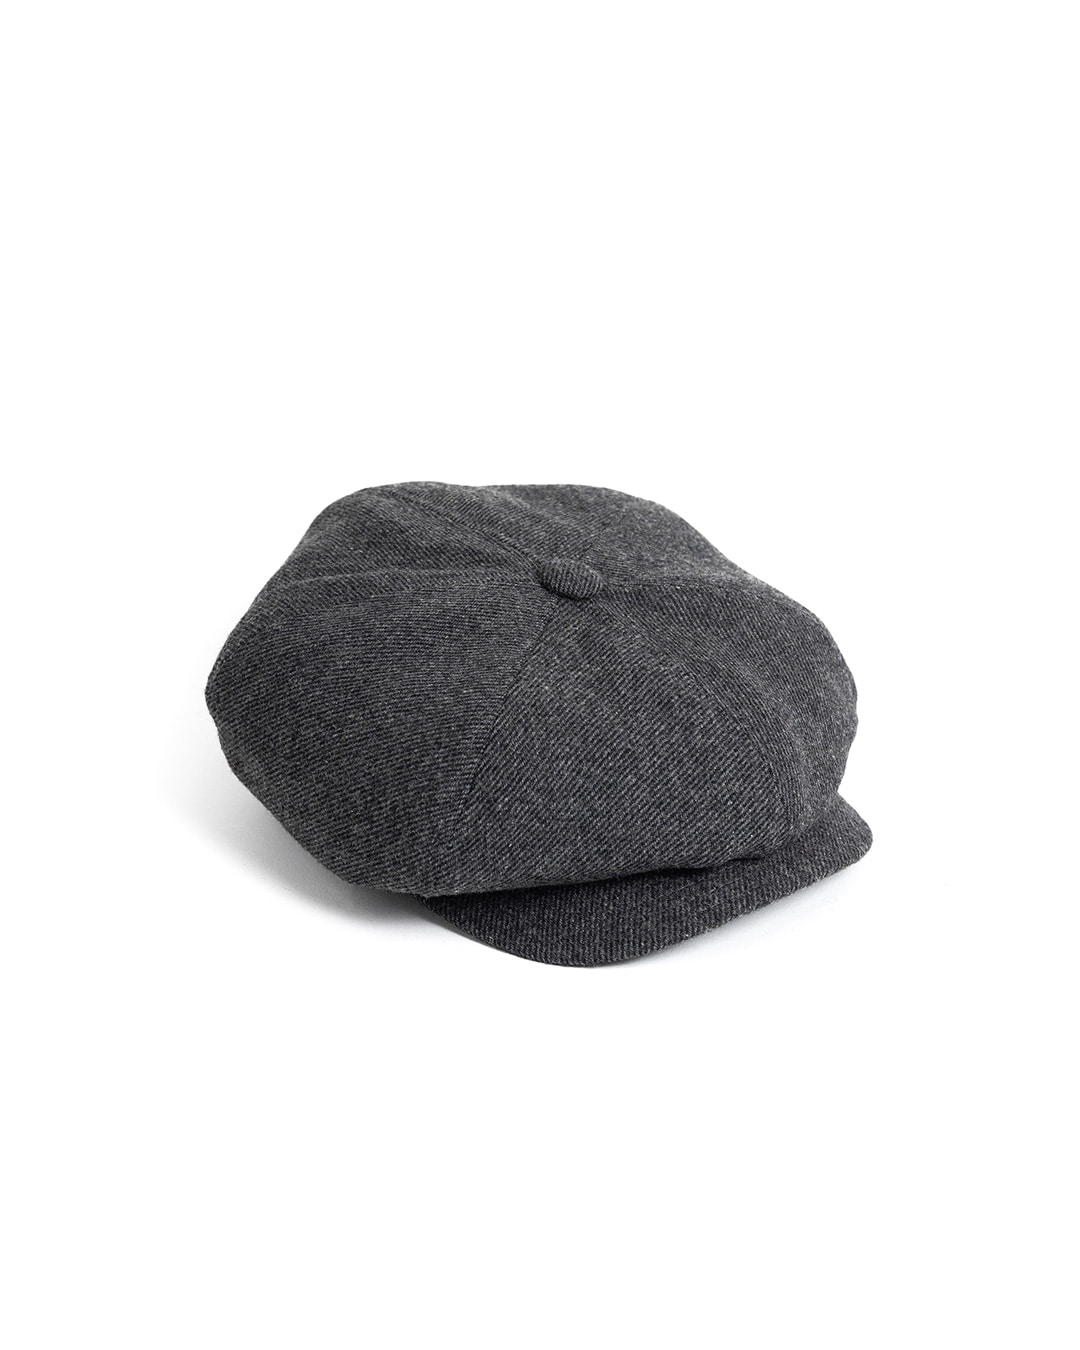 LB TWILL NEWSBOY CAP (charcoal)